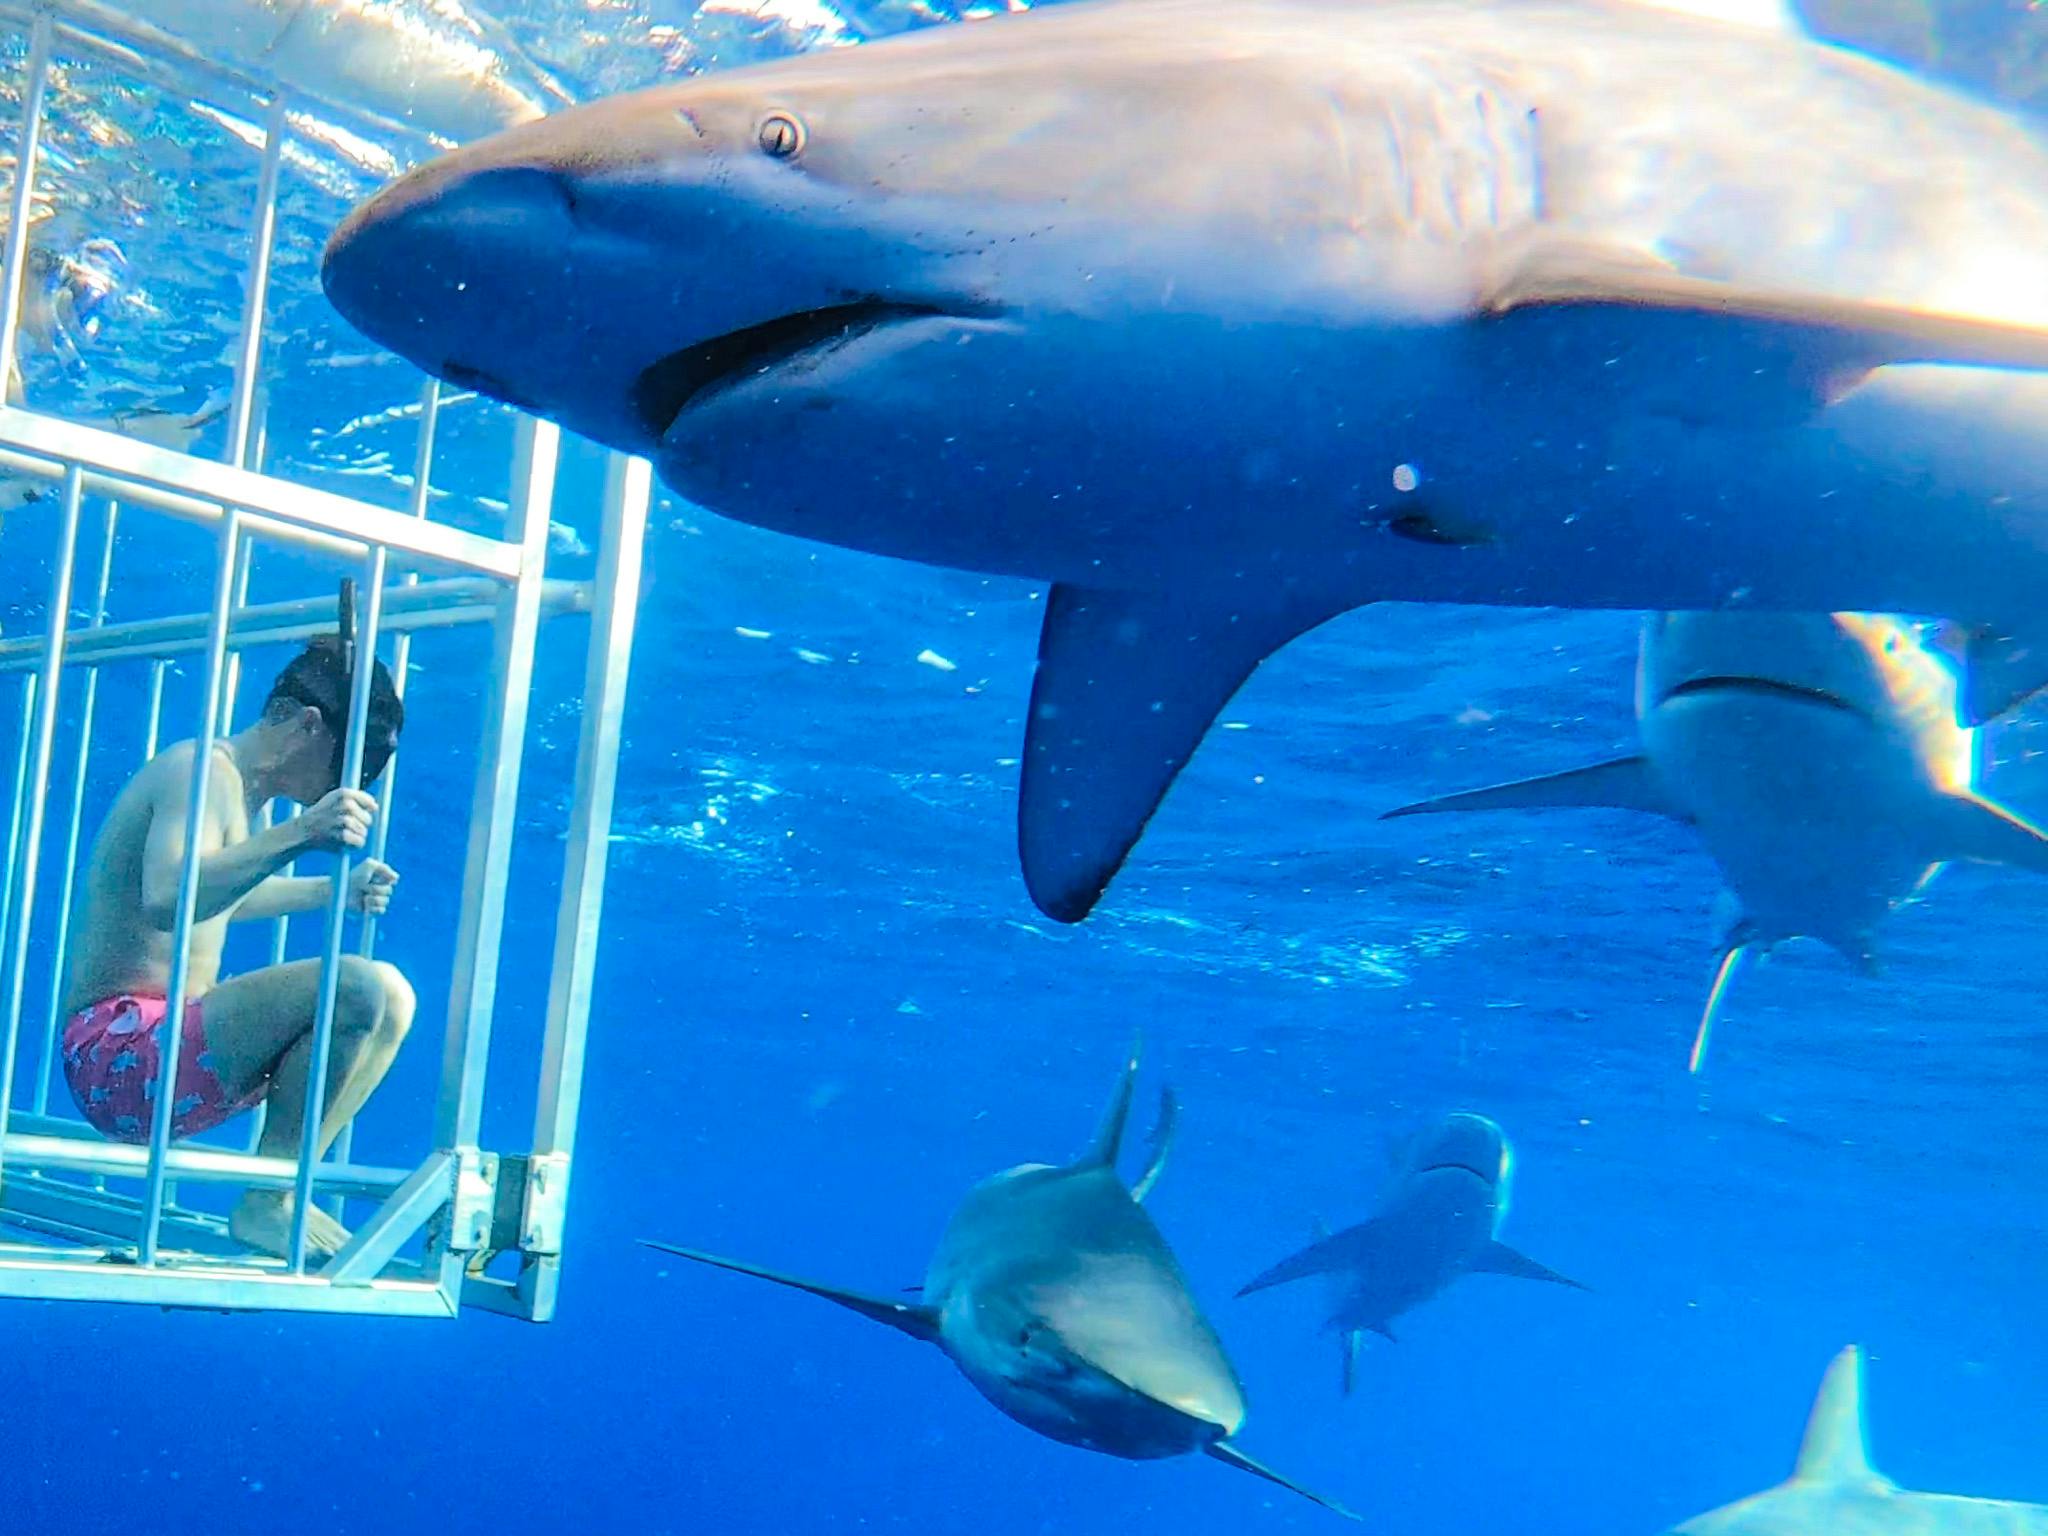 Oahu shark diving tour 2.jpg